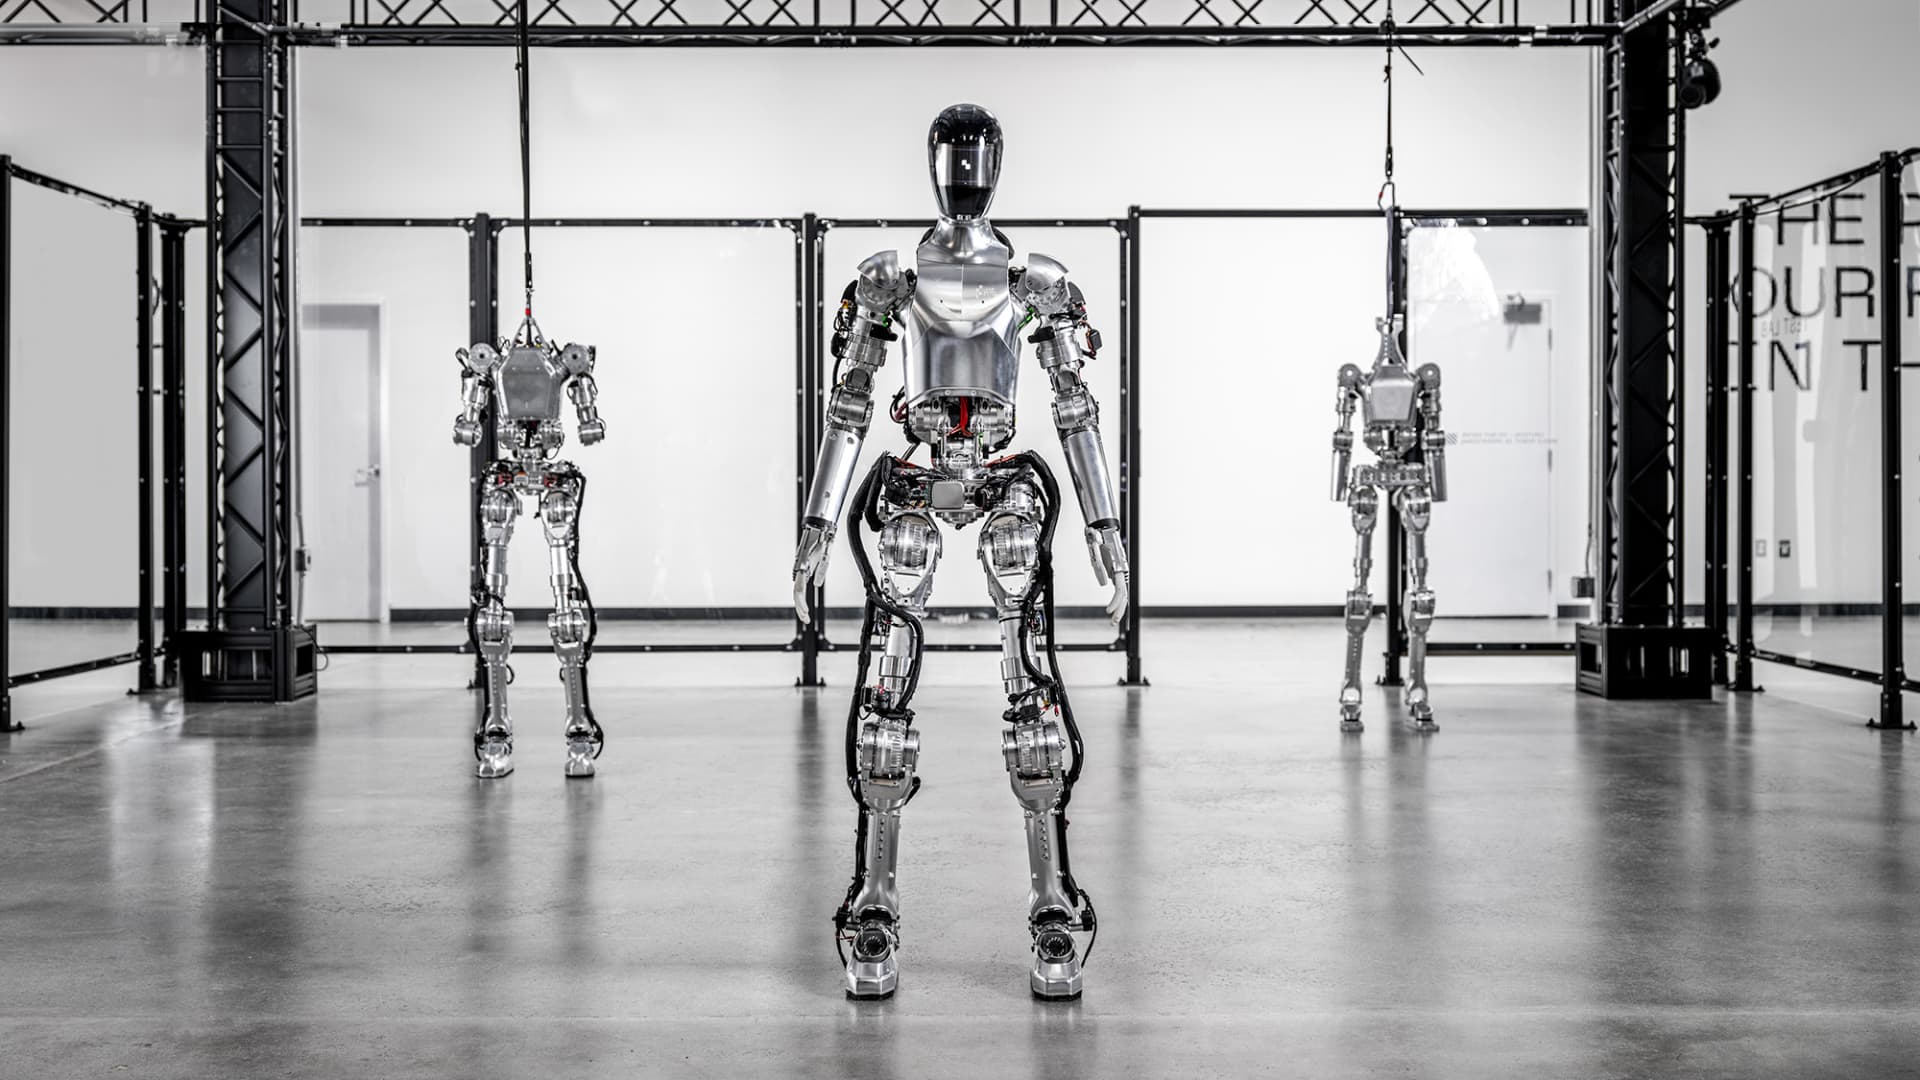 Robot startup Determine valued at .6 billion by Bezos, Amazon, Nvidia